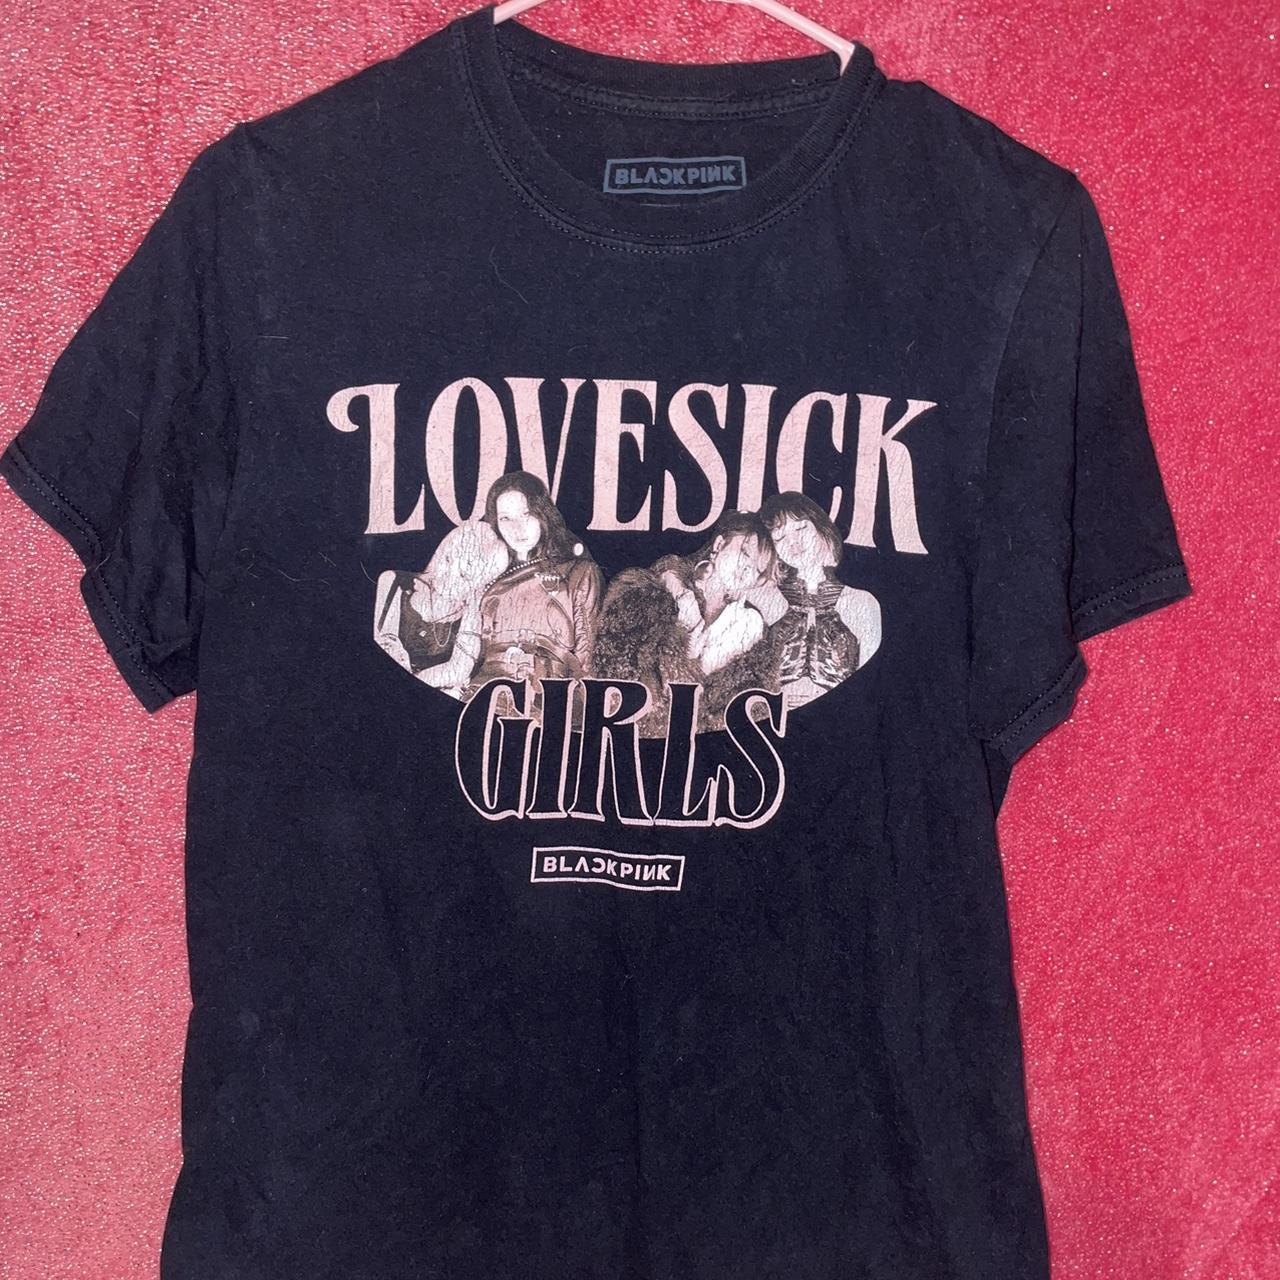 Blackpink lovesick girls shirt from Hot Topic, worn... - Depop